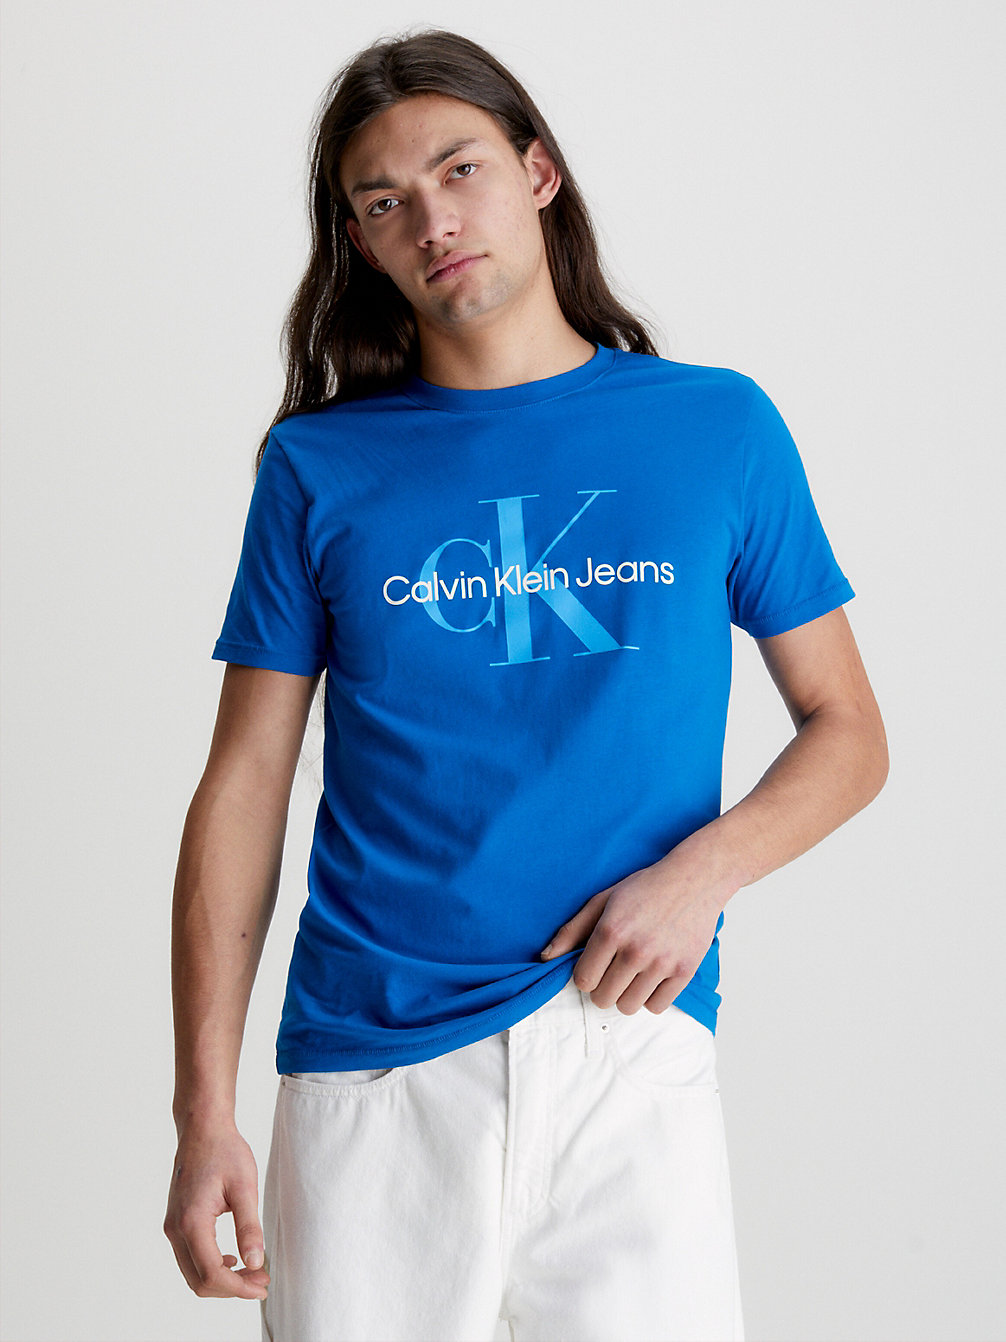 TARPS BLUE Schmales Monogramm-T-Shirt undefined Herren Calvin Klein